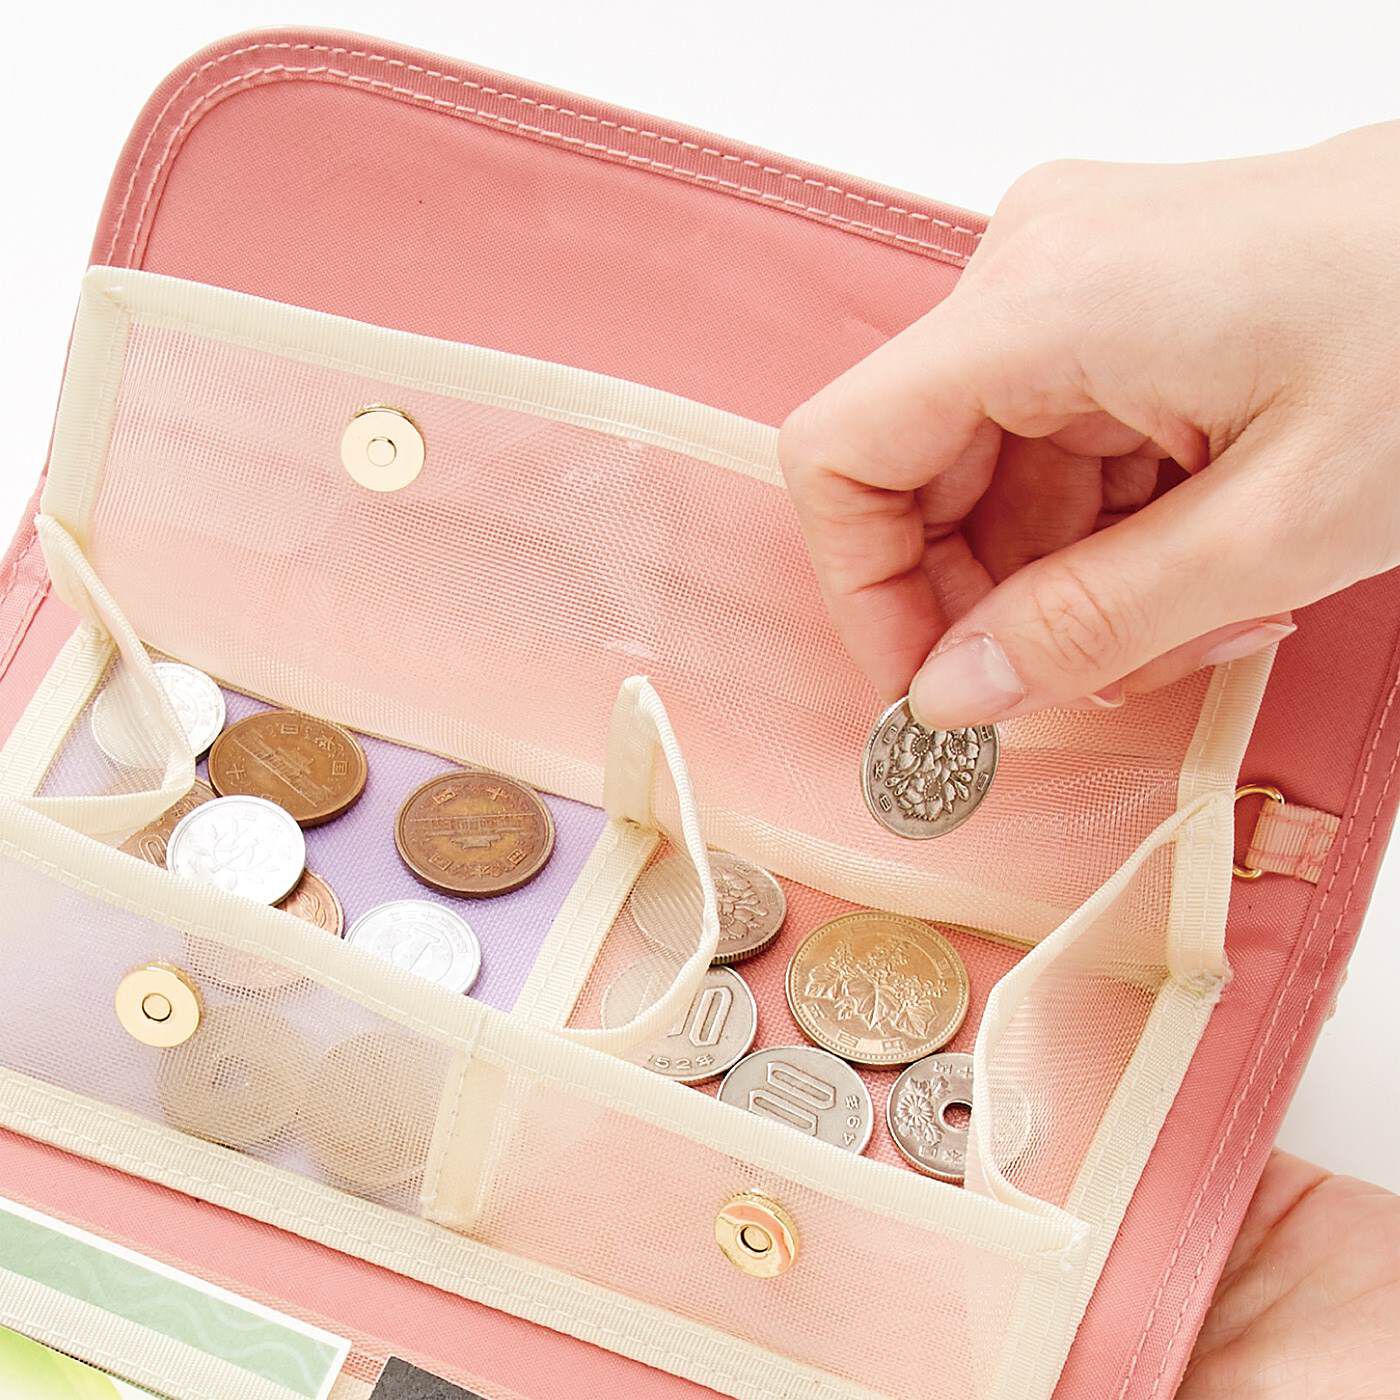 C.C.P|LITALICO×CCP　見渡しやすさ&つかみ取りやすさ抜群 スマホも入る透けるメッシュ財布〈ピンク〉|小銭入れもマグネットボタン式。がばっと開いてコインをつかみやすい。